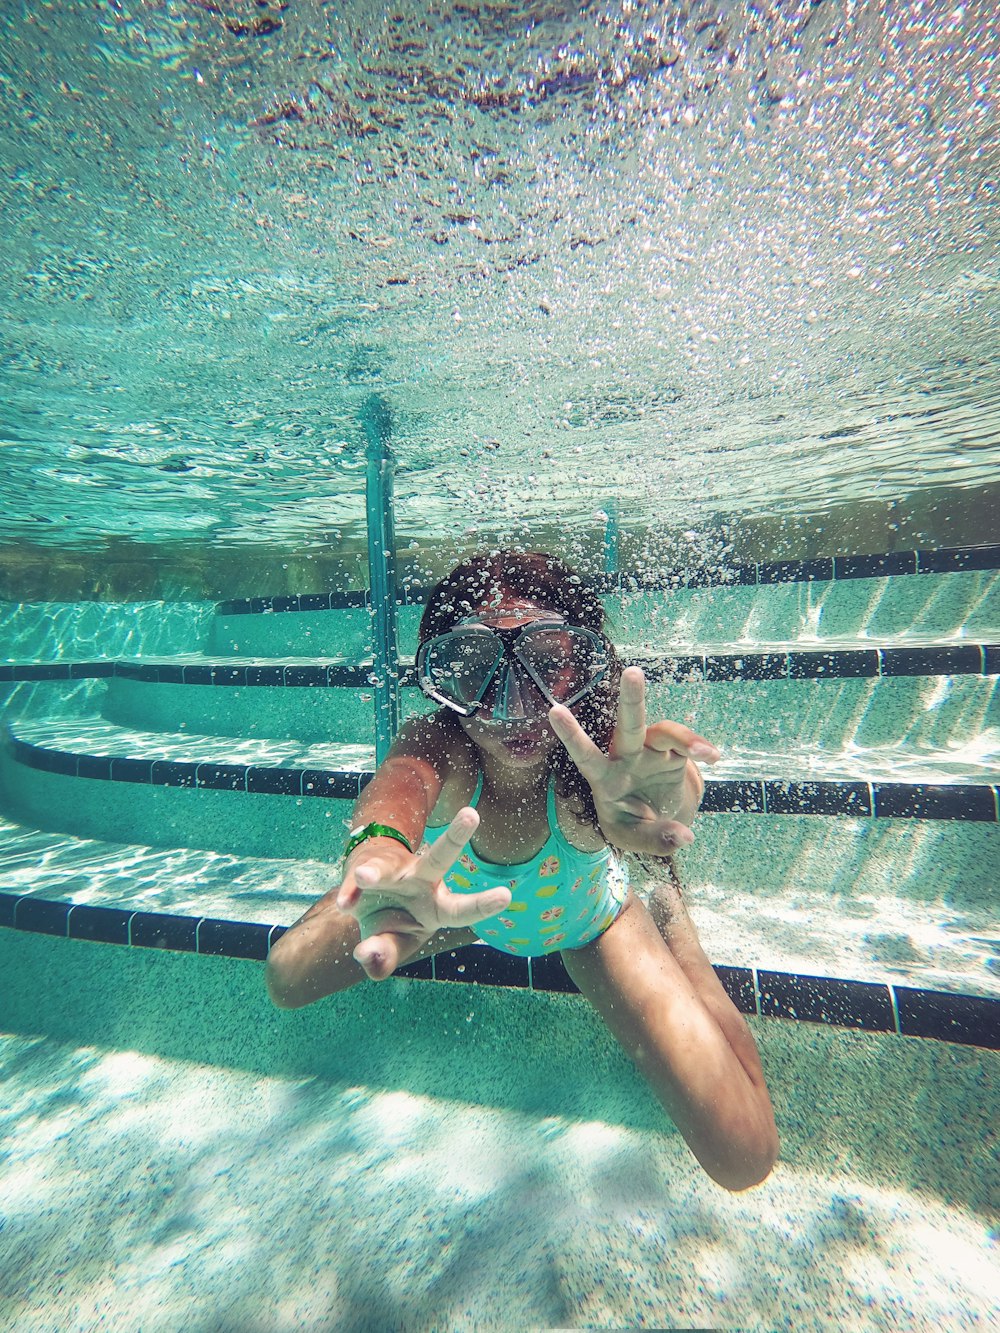 昼間に水中を泳いでいる人の写真 Unsplashで見つけるパナマシティービーチの無料写真